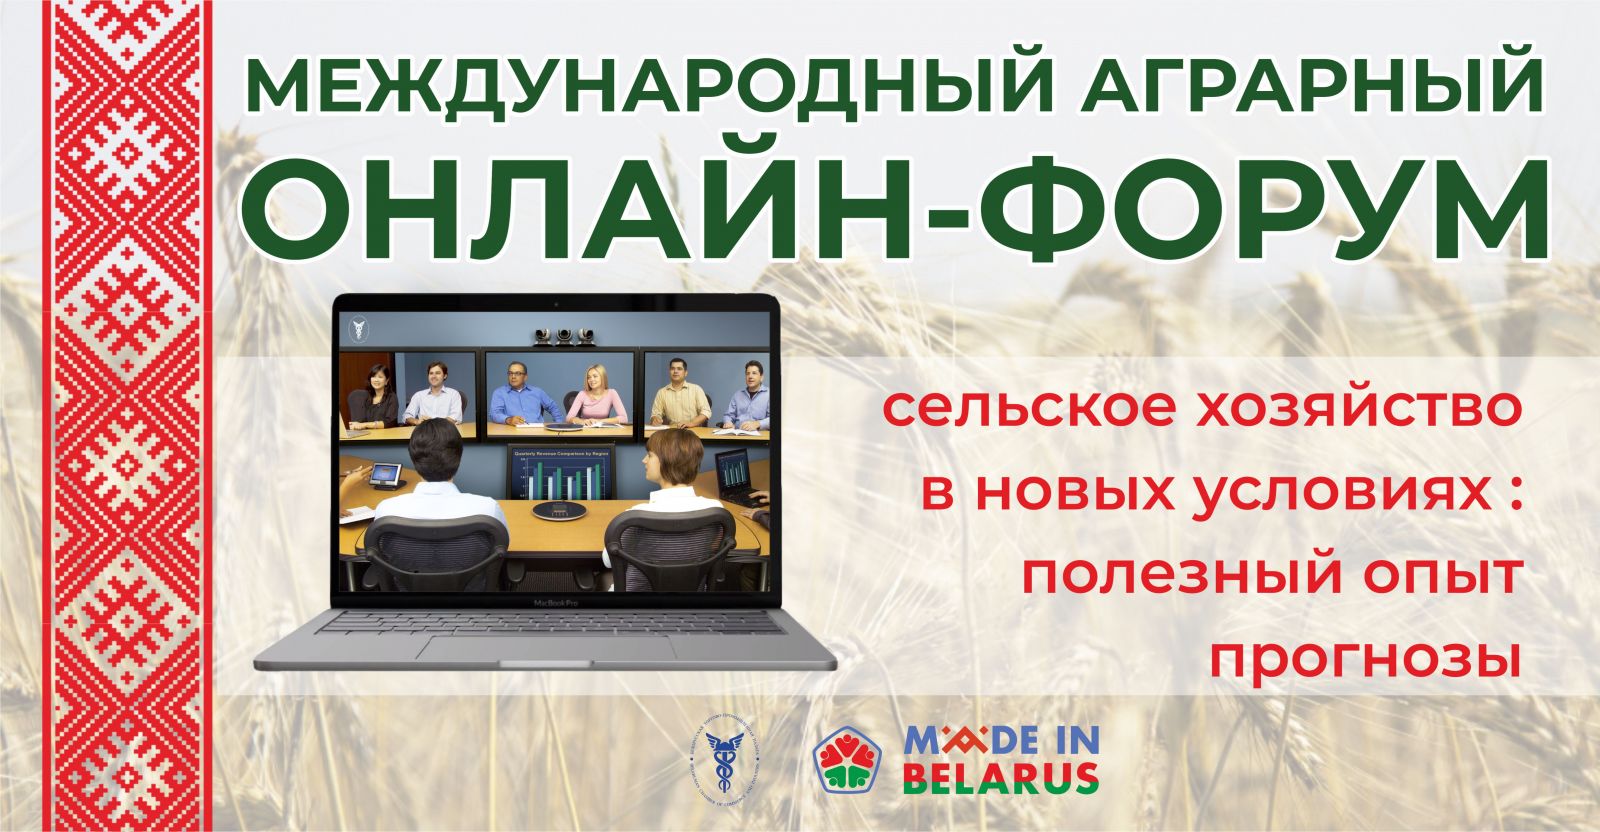 Международный аграрный онлайн-форум